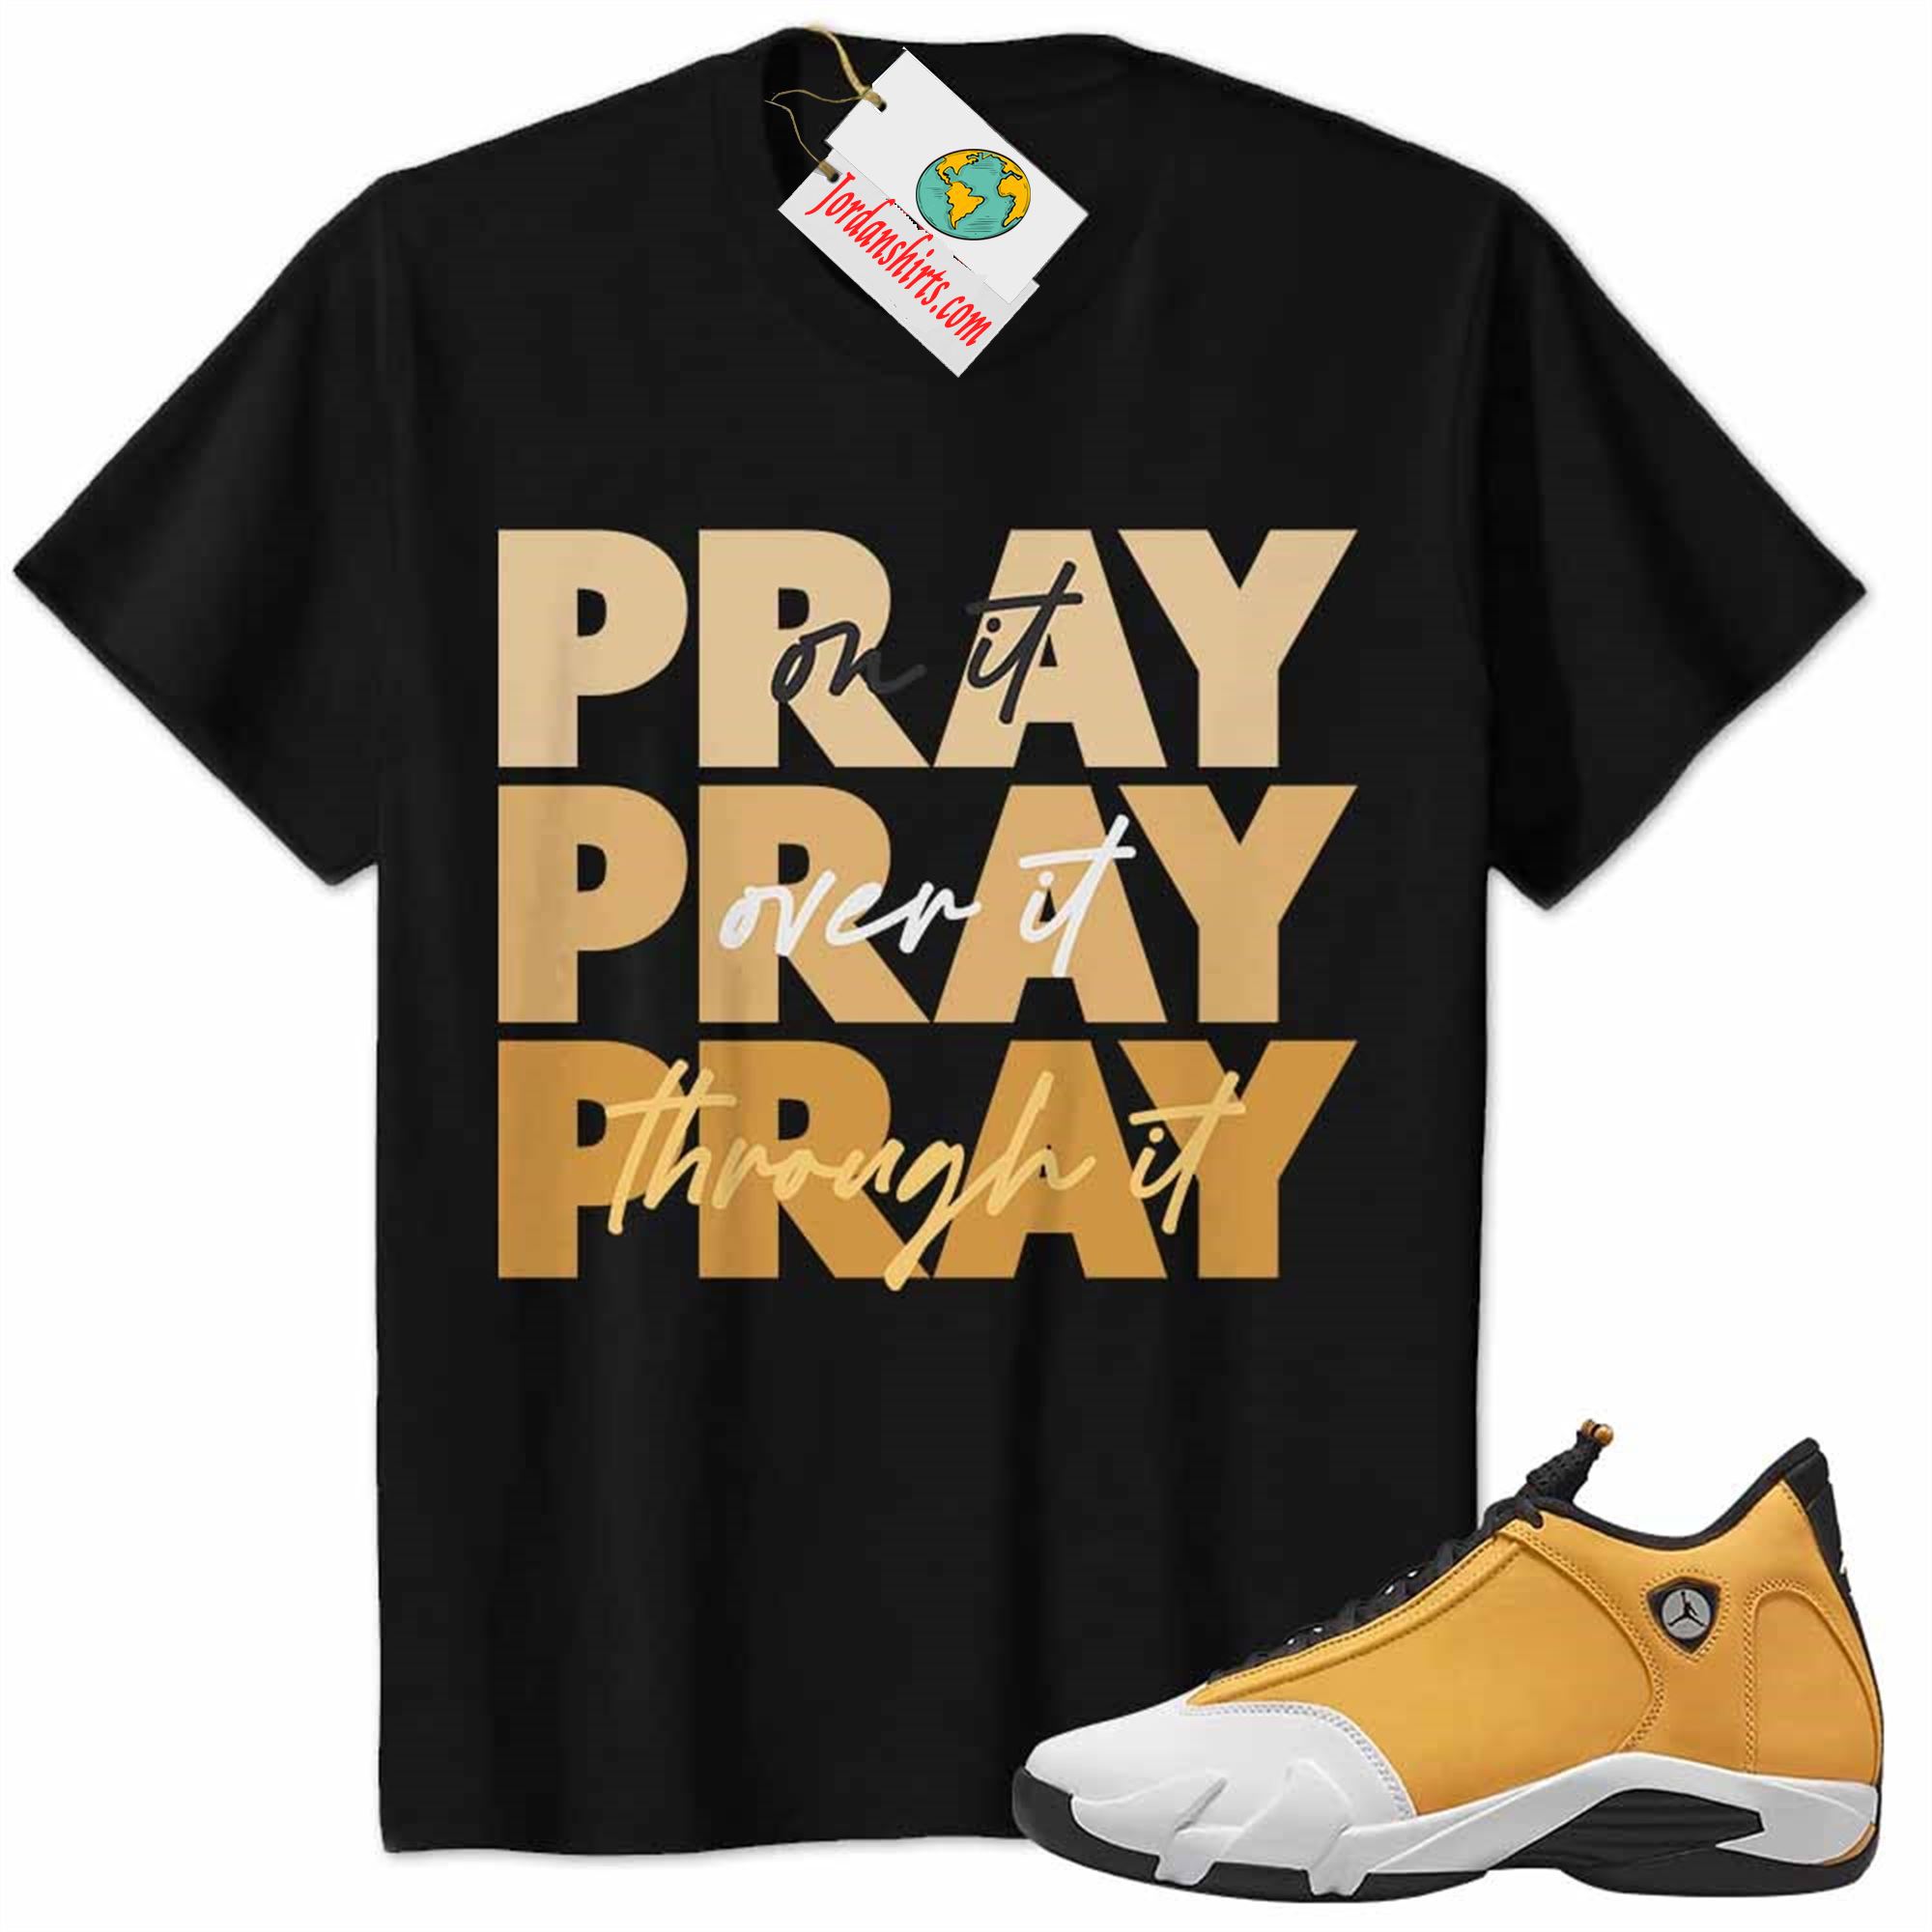 Jordan 14 Shirt, Jordan 14 Ginger Shirt Shirt Pray On It Pray Over It Pray Through It Black Plus Size Up To 5xl